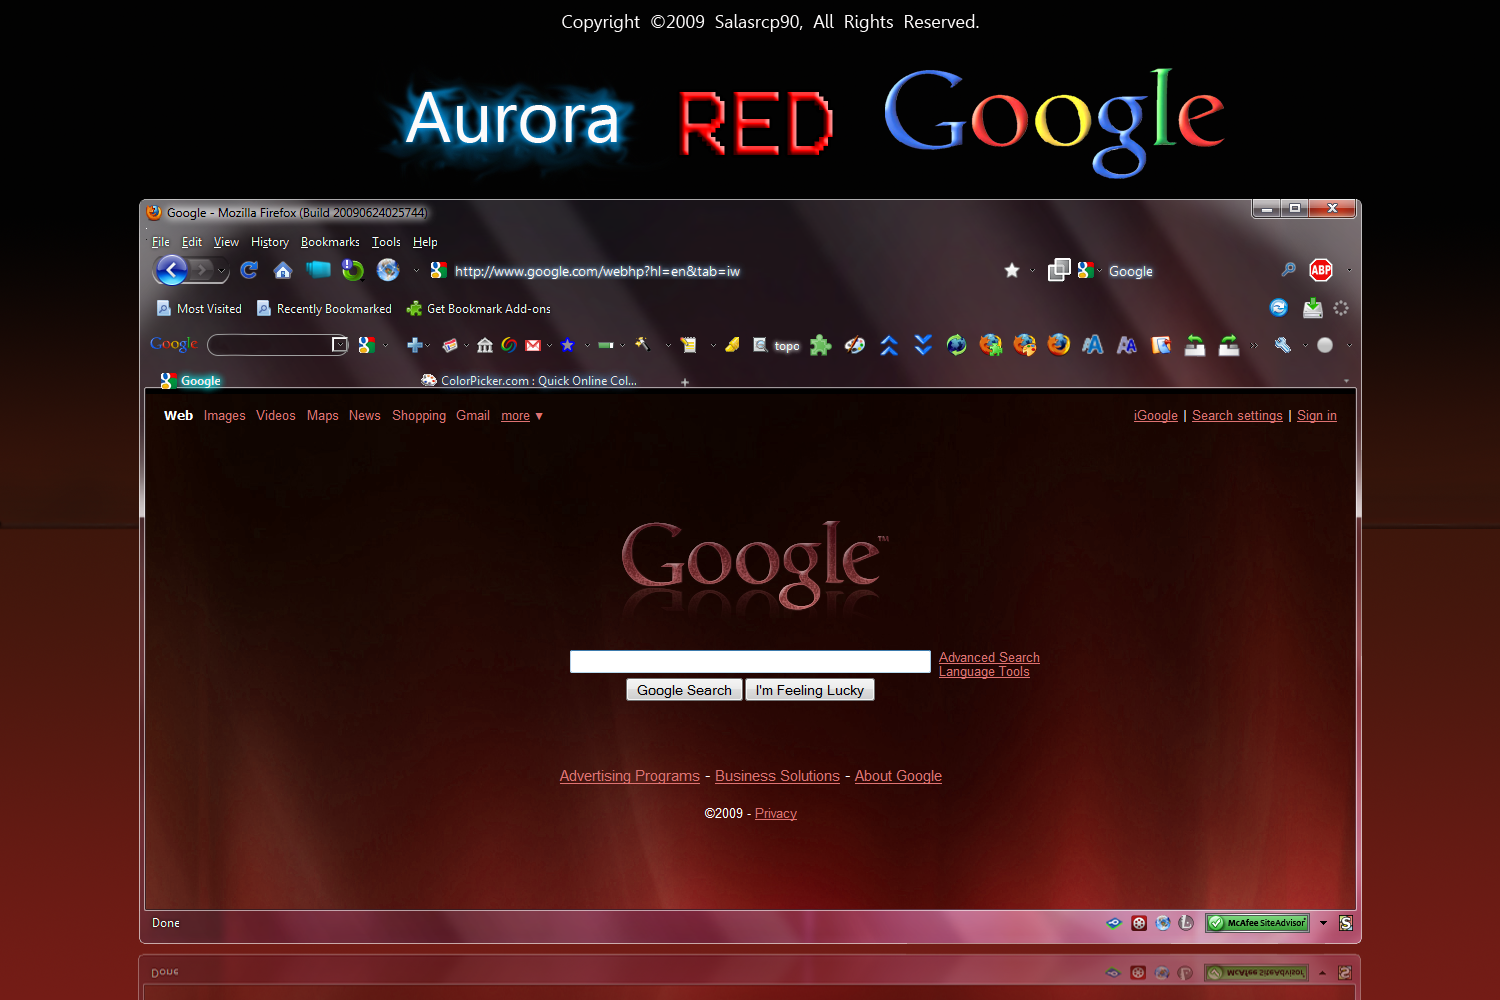 Aurora_RED_Google_by_salasrcp90